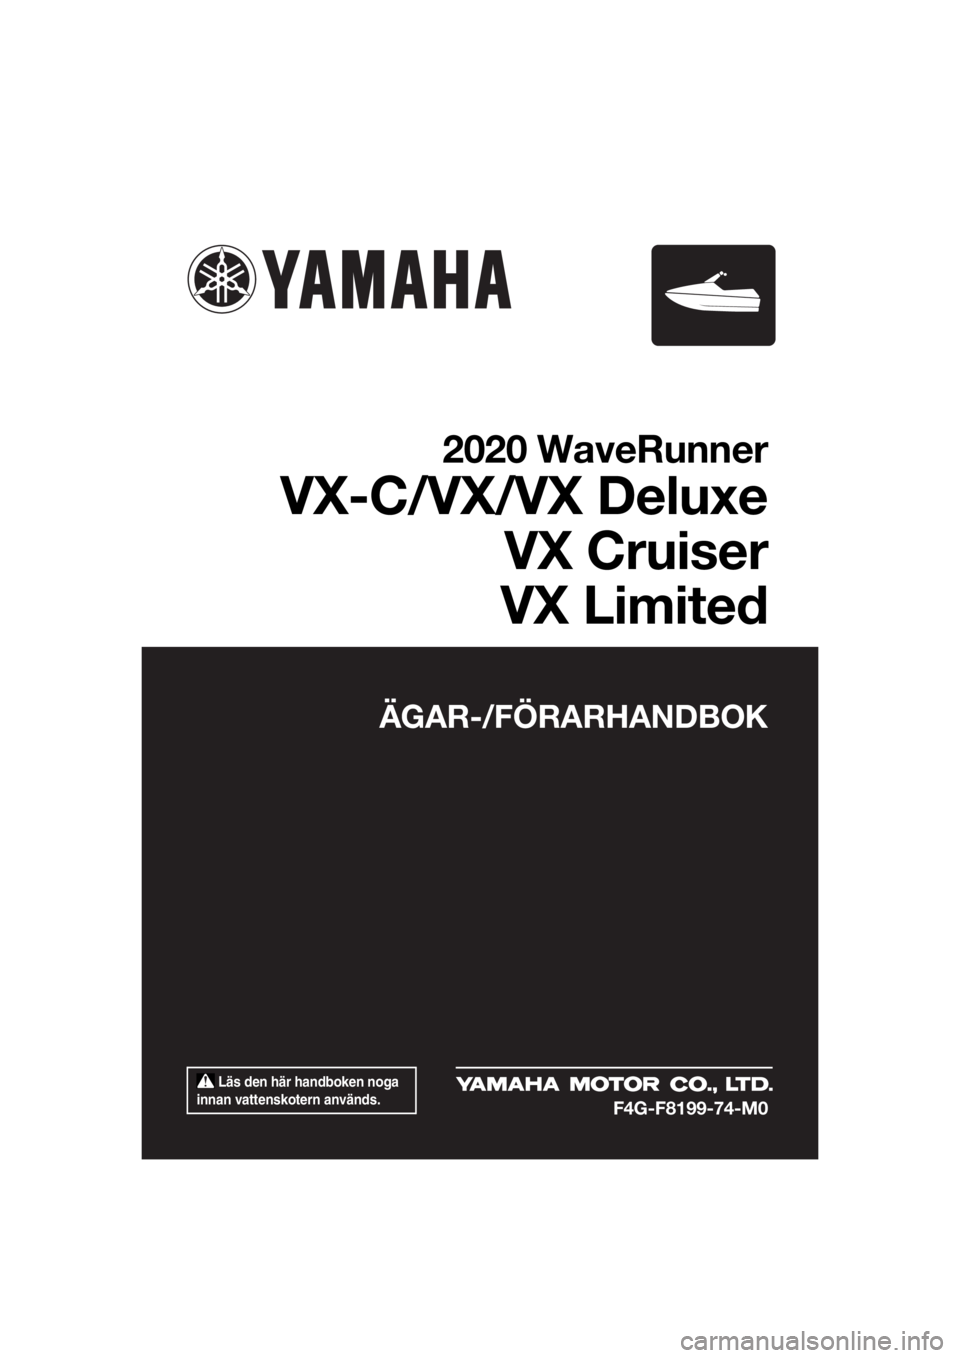 YAMAHA VX 2020  Bruksanvisningar (in Swedish)  Läs den här handboken noga 
innan vattenskotern används.
ÄGAR-/FÖRARHANDBOK
2020 WaveRunner
VX-C/VX/VX Deluxe
VX Cruiser
VX Limited
F4G-F8199-74-M0
UF4G74M0.book  Page 1  Monday, July 15, 2019  